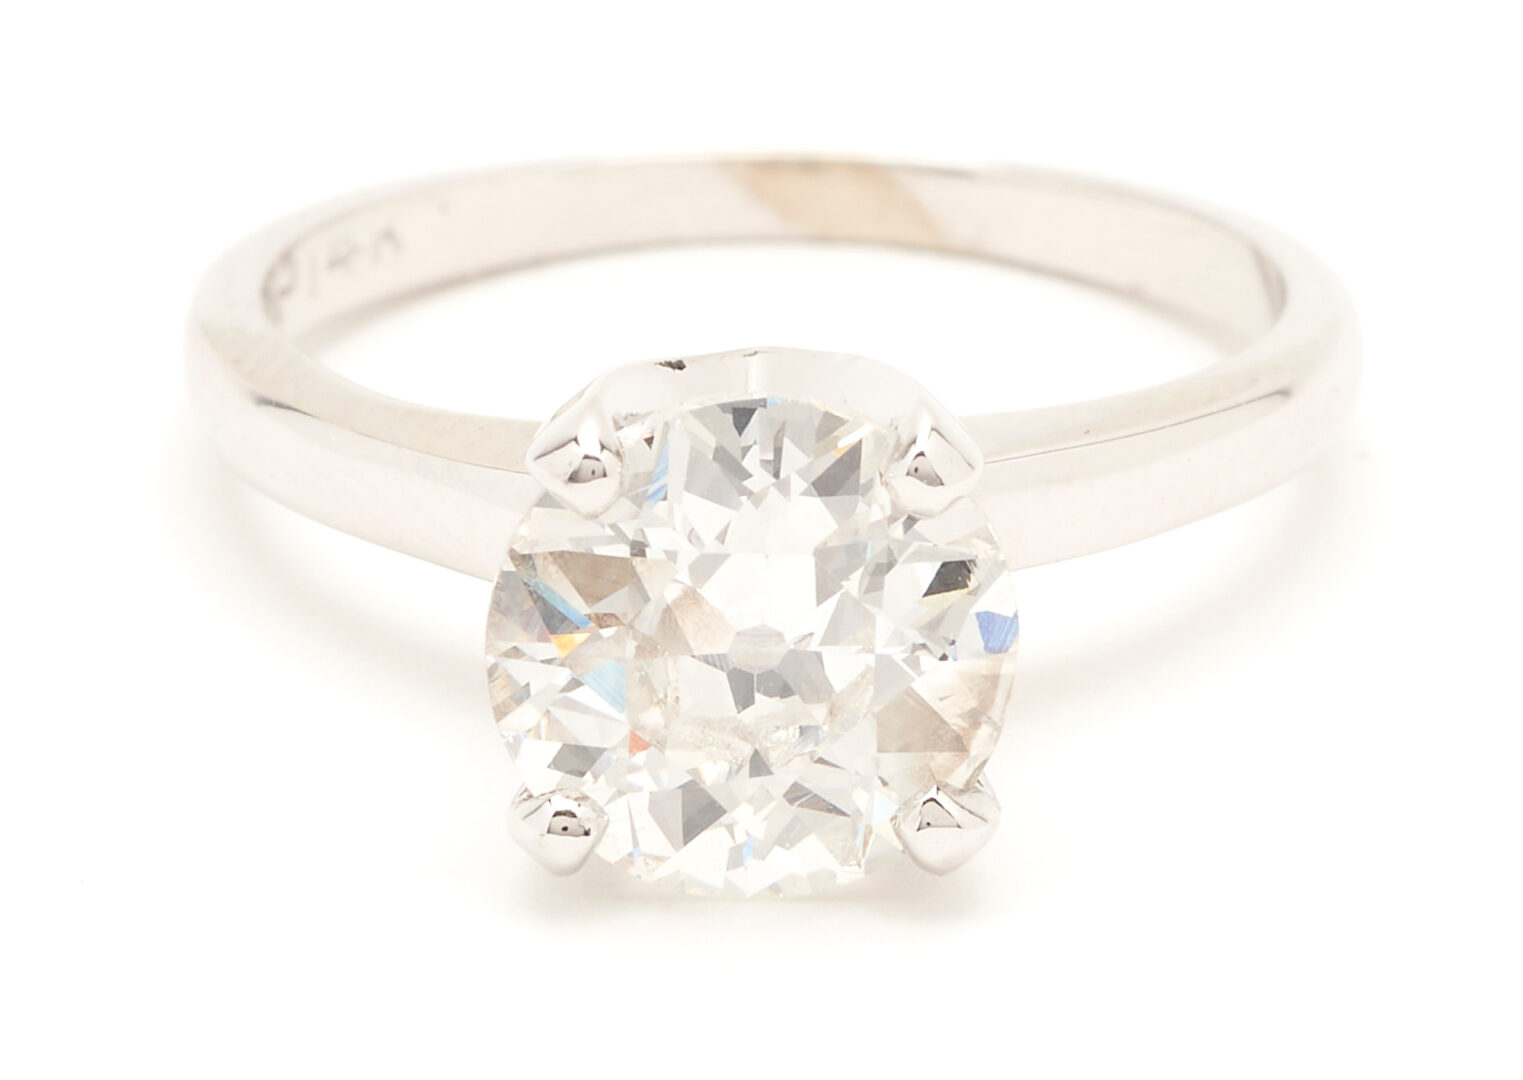 Lot 49: Ladies 1.92 Carat Diamond Solitaire Ring, GIA Report